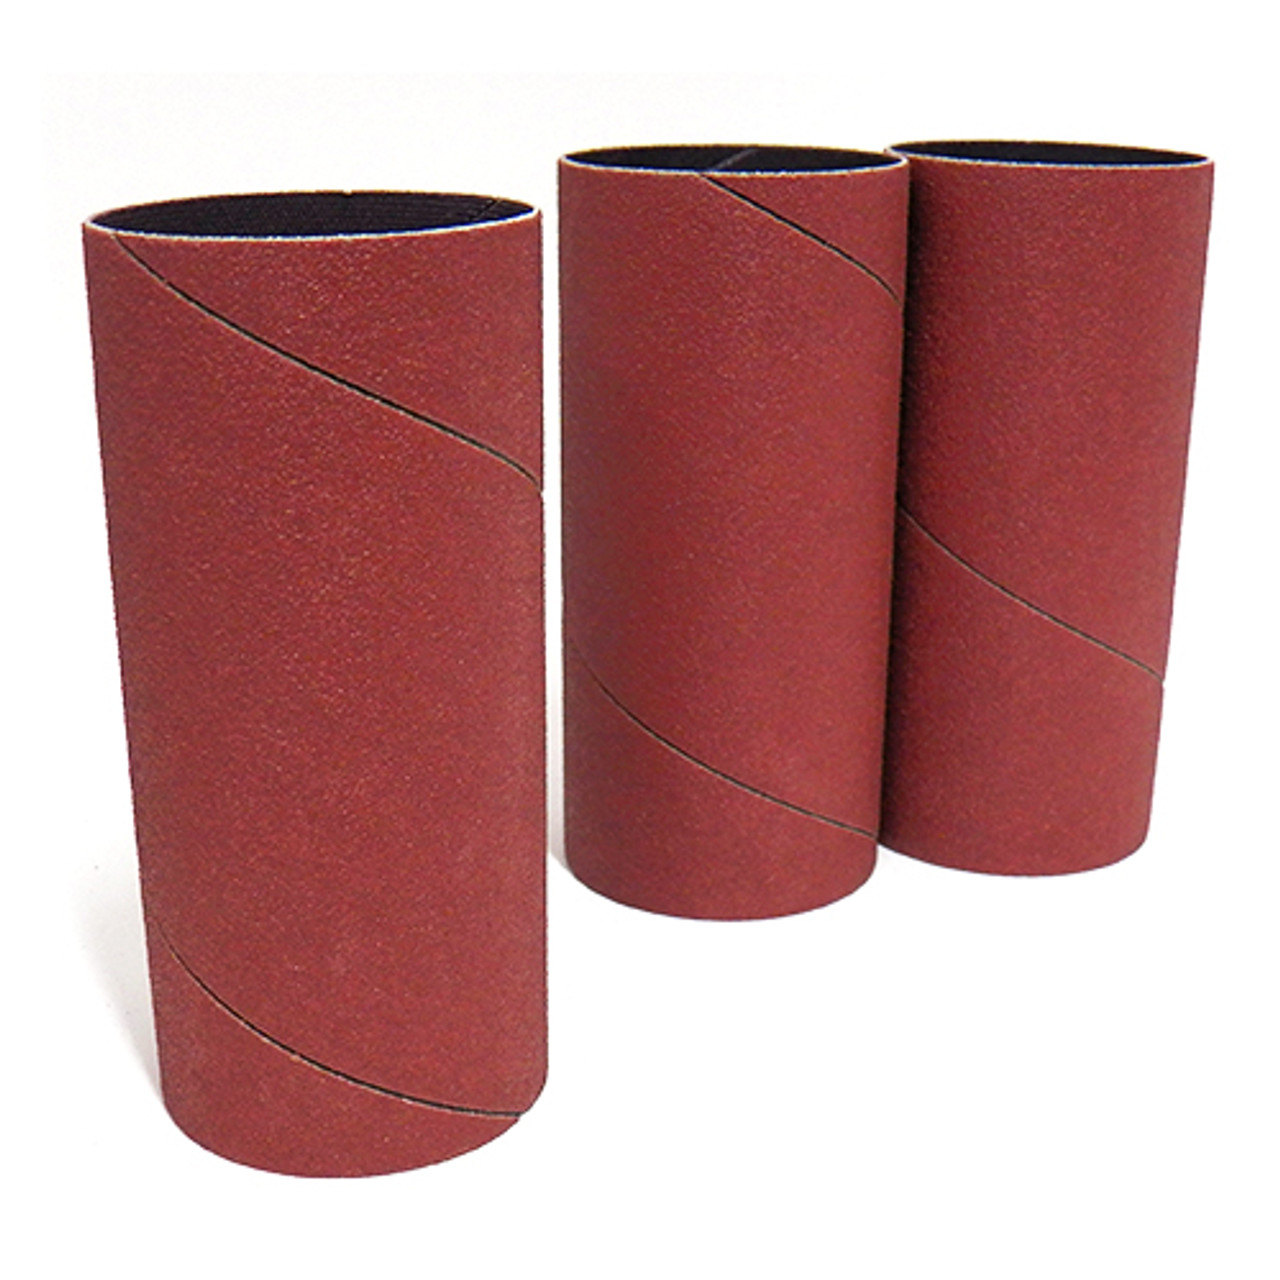 Klingspor Abrasives Aluminum Oxide Sanding Sleeves, 2"X 4-1/2" 150 Grit, 3pk